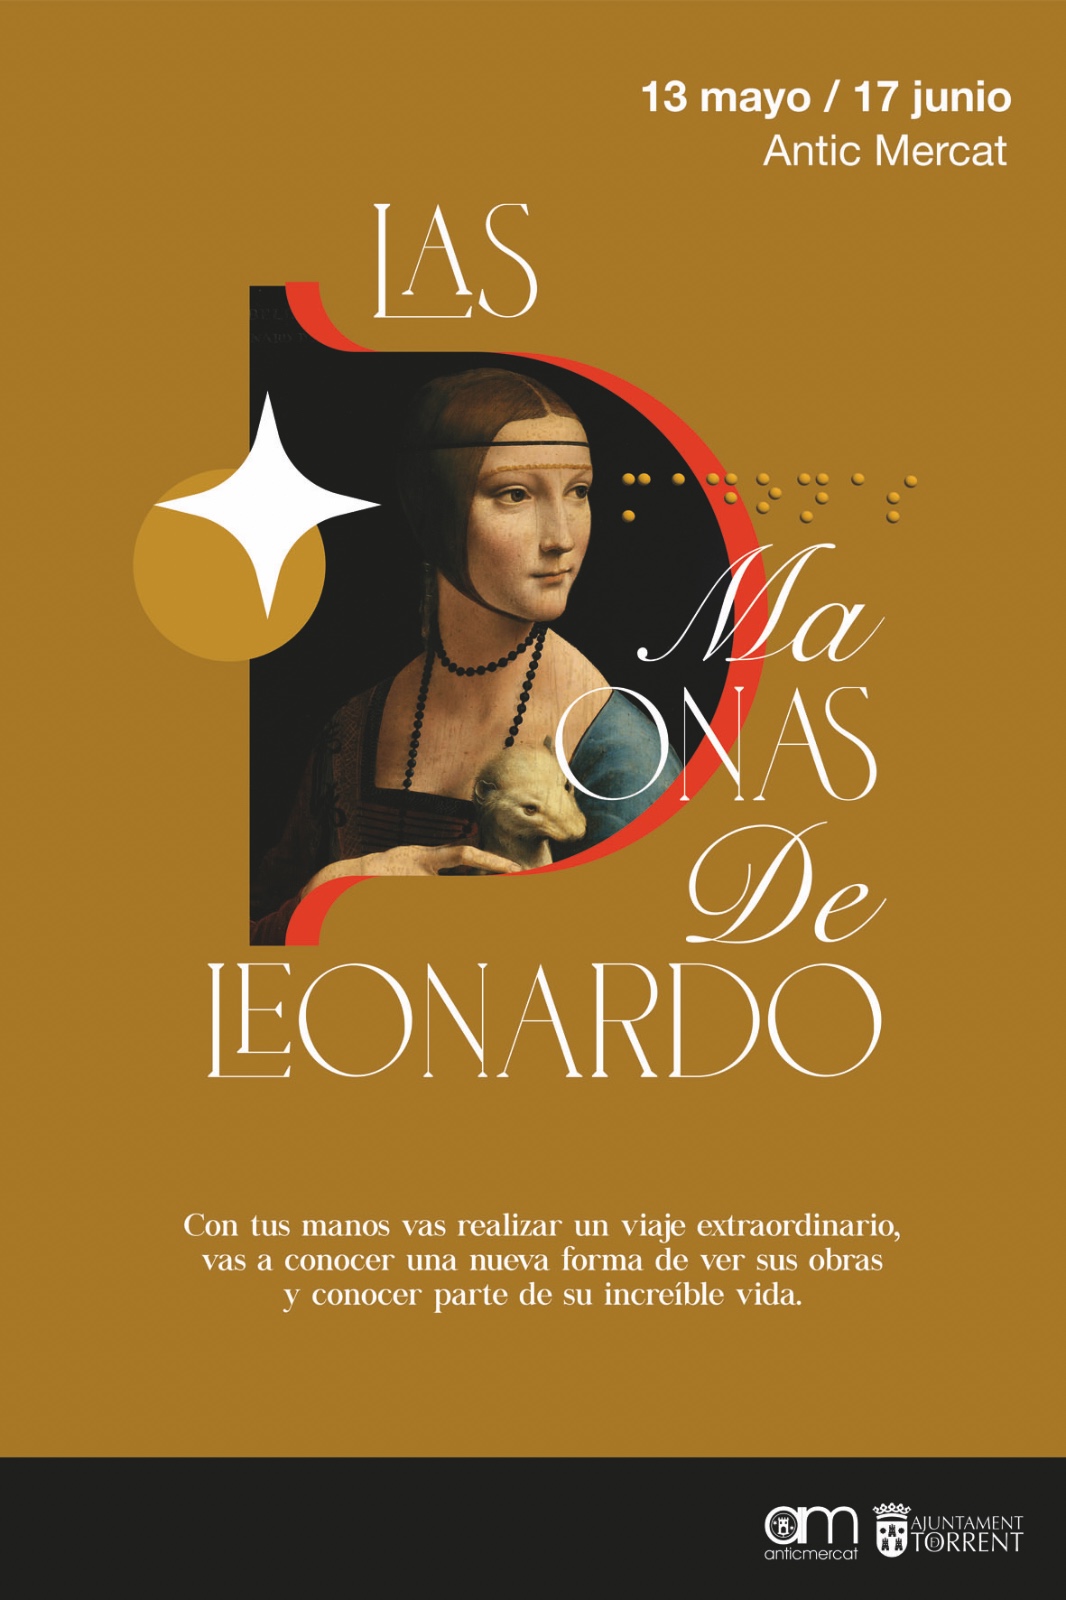 L’Antic Mercat acull l’exposició sensorial i inclusiva “Las Madonnas de Leonardo”